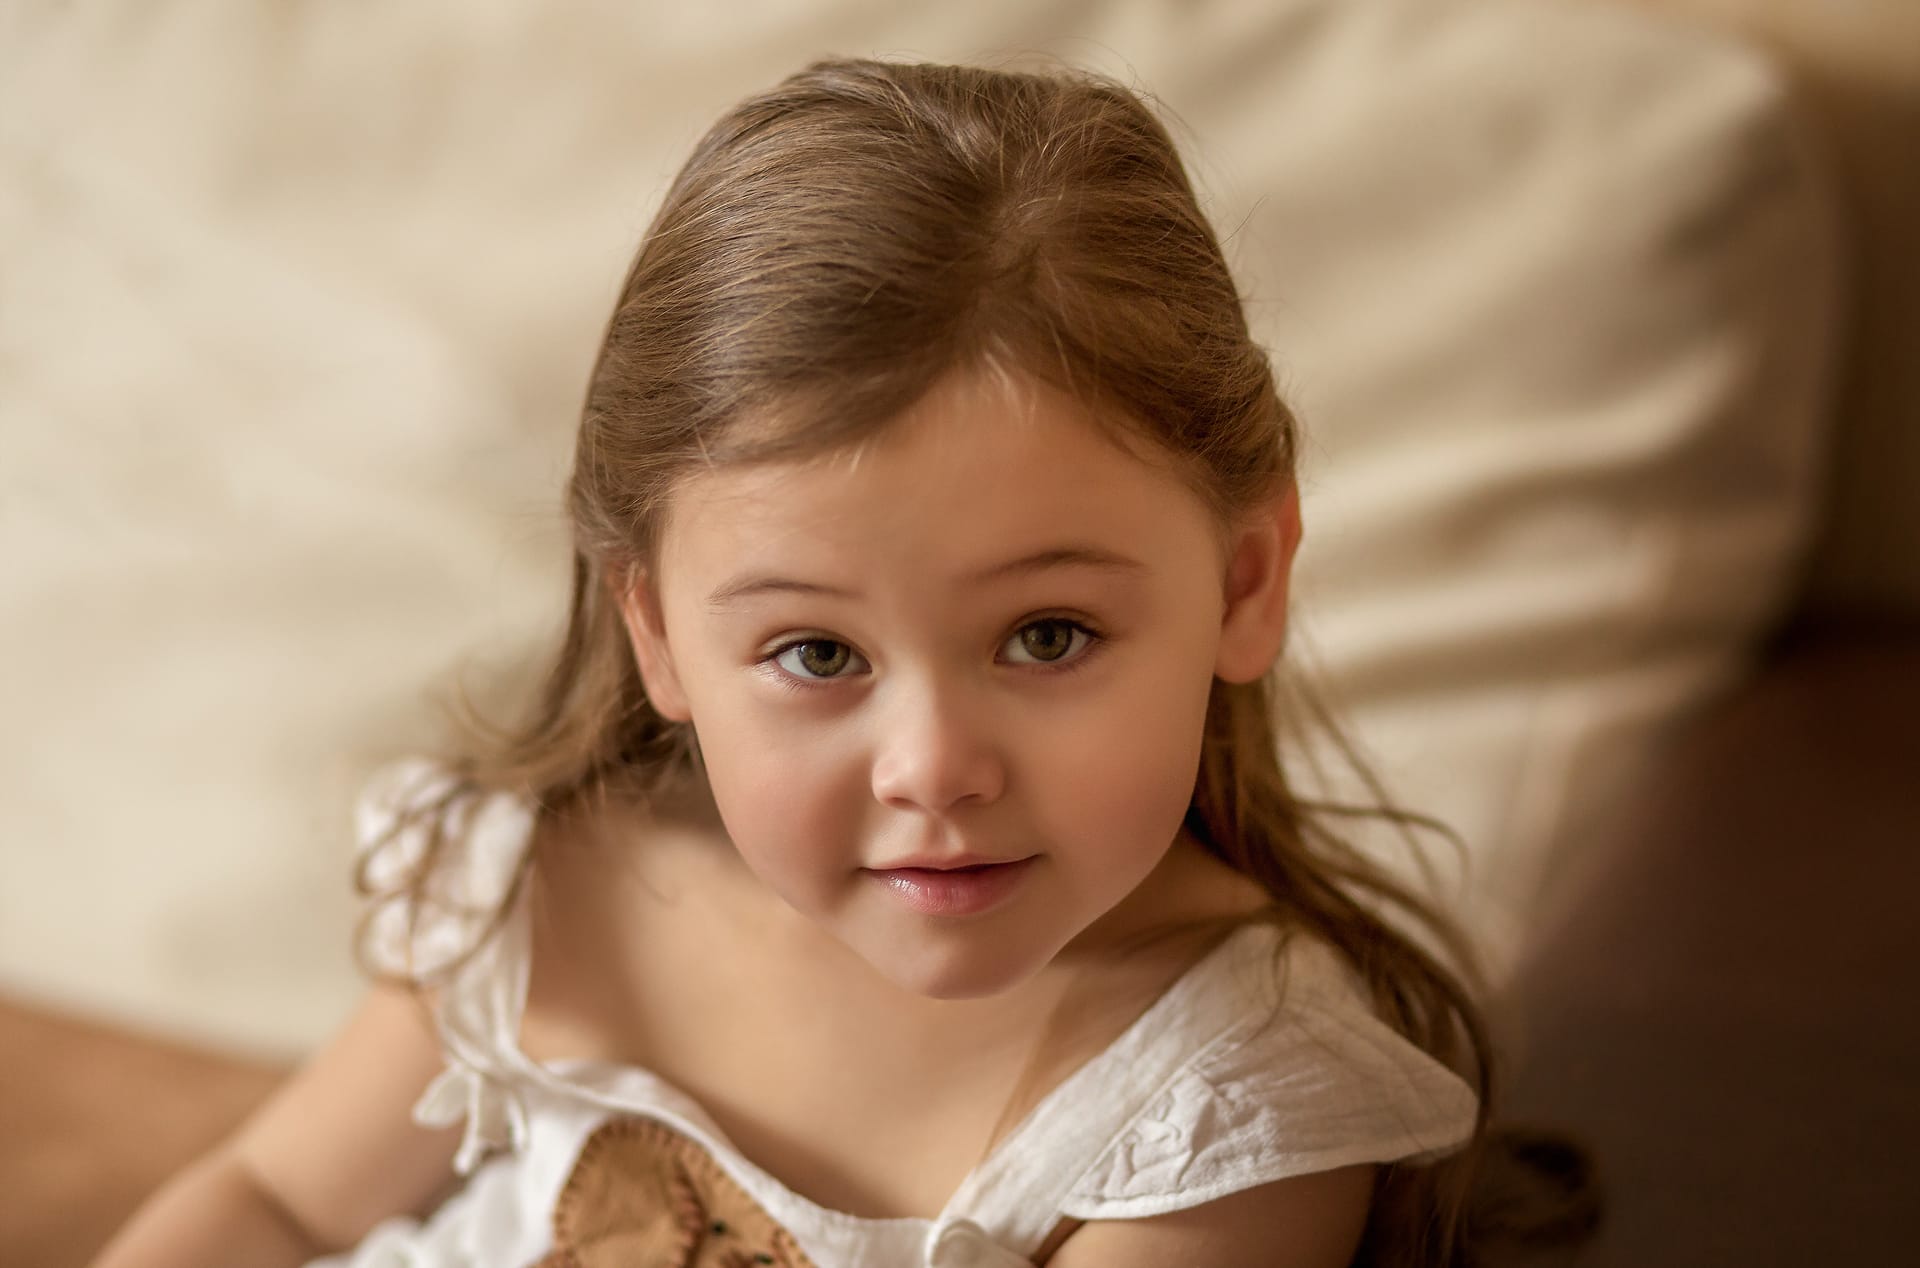 Baby photoshoot portrait little girl indoors